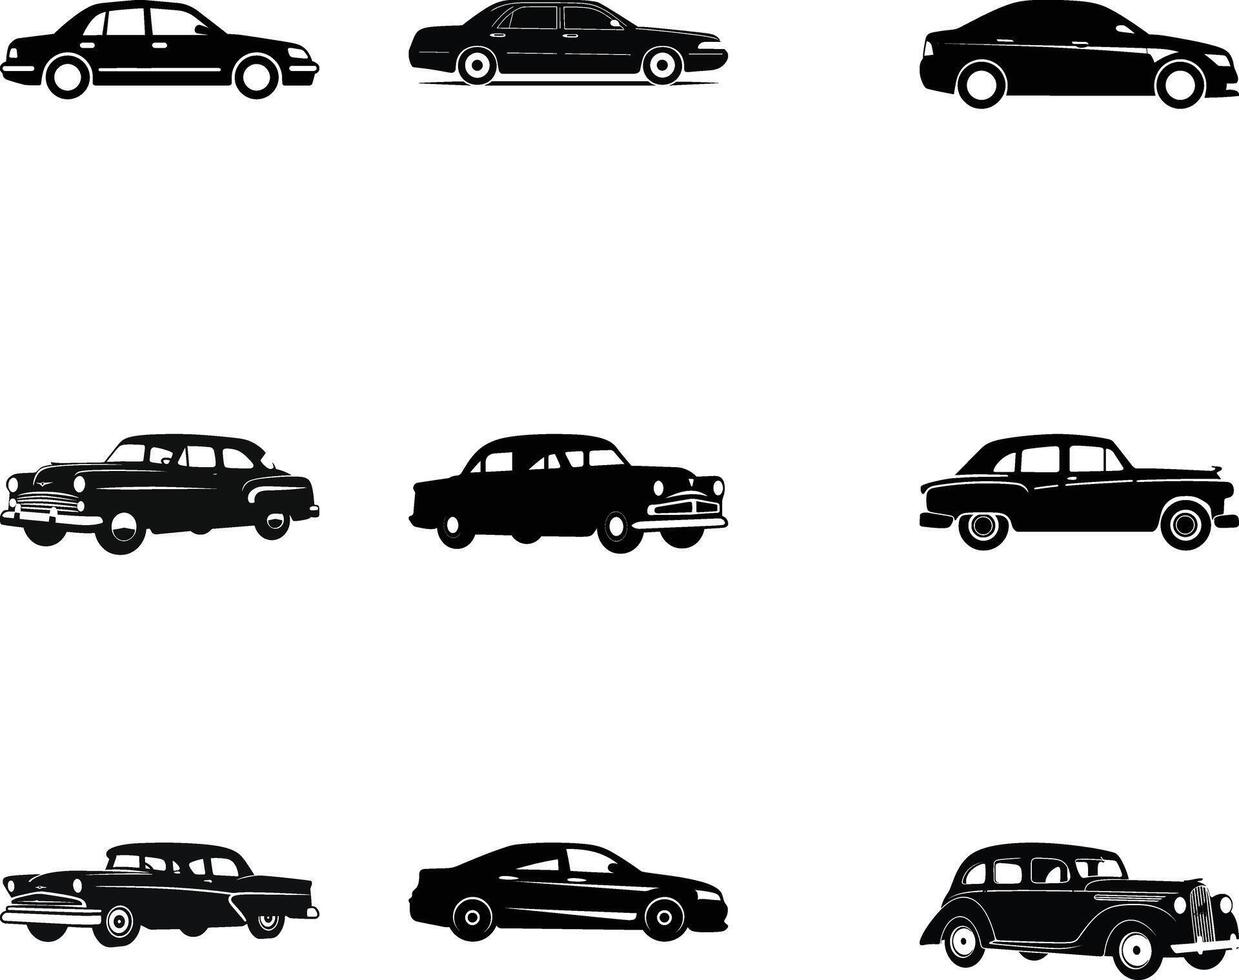 Stadt Leben das Wesentliche Taxi Silhouetten zum dynamisch Abbildungen vektor